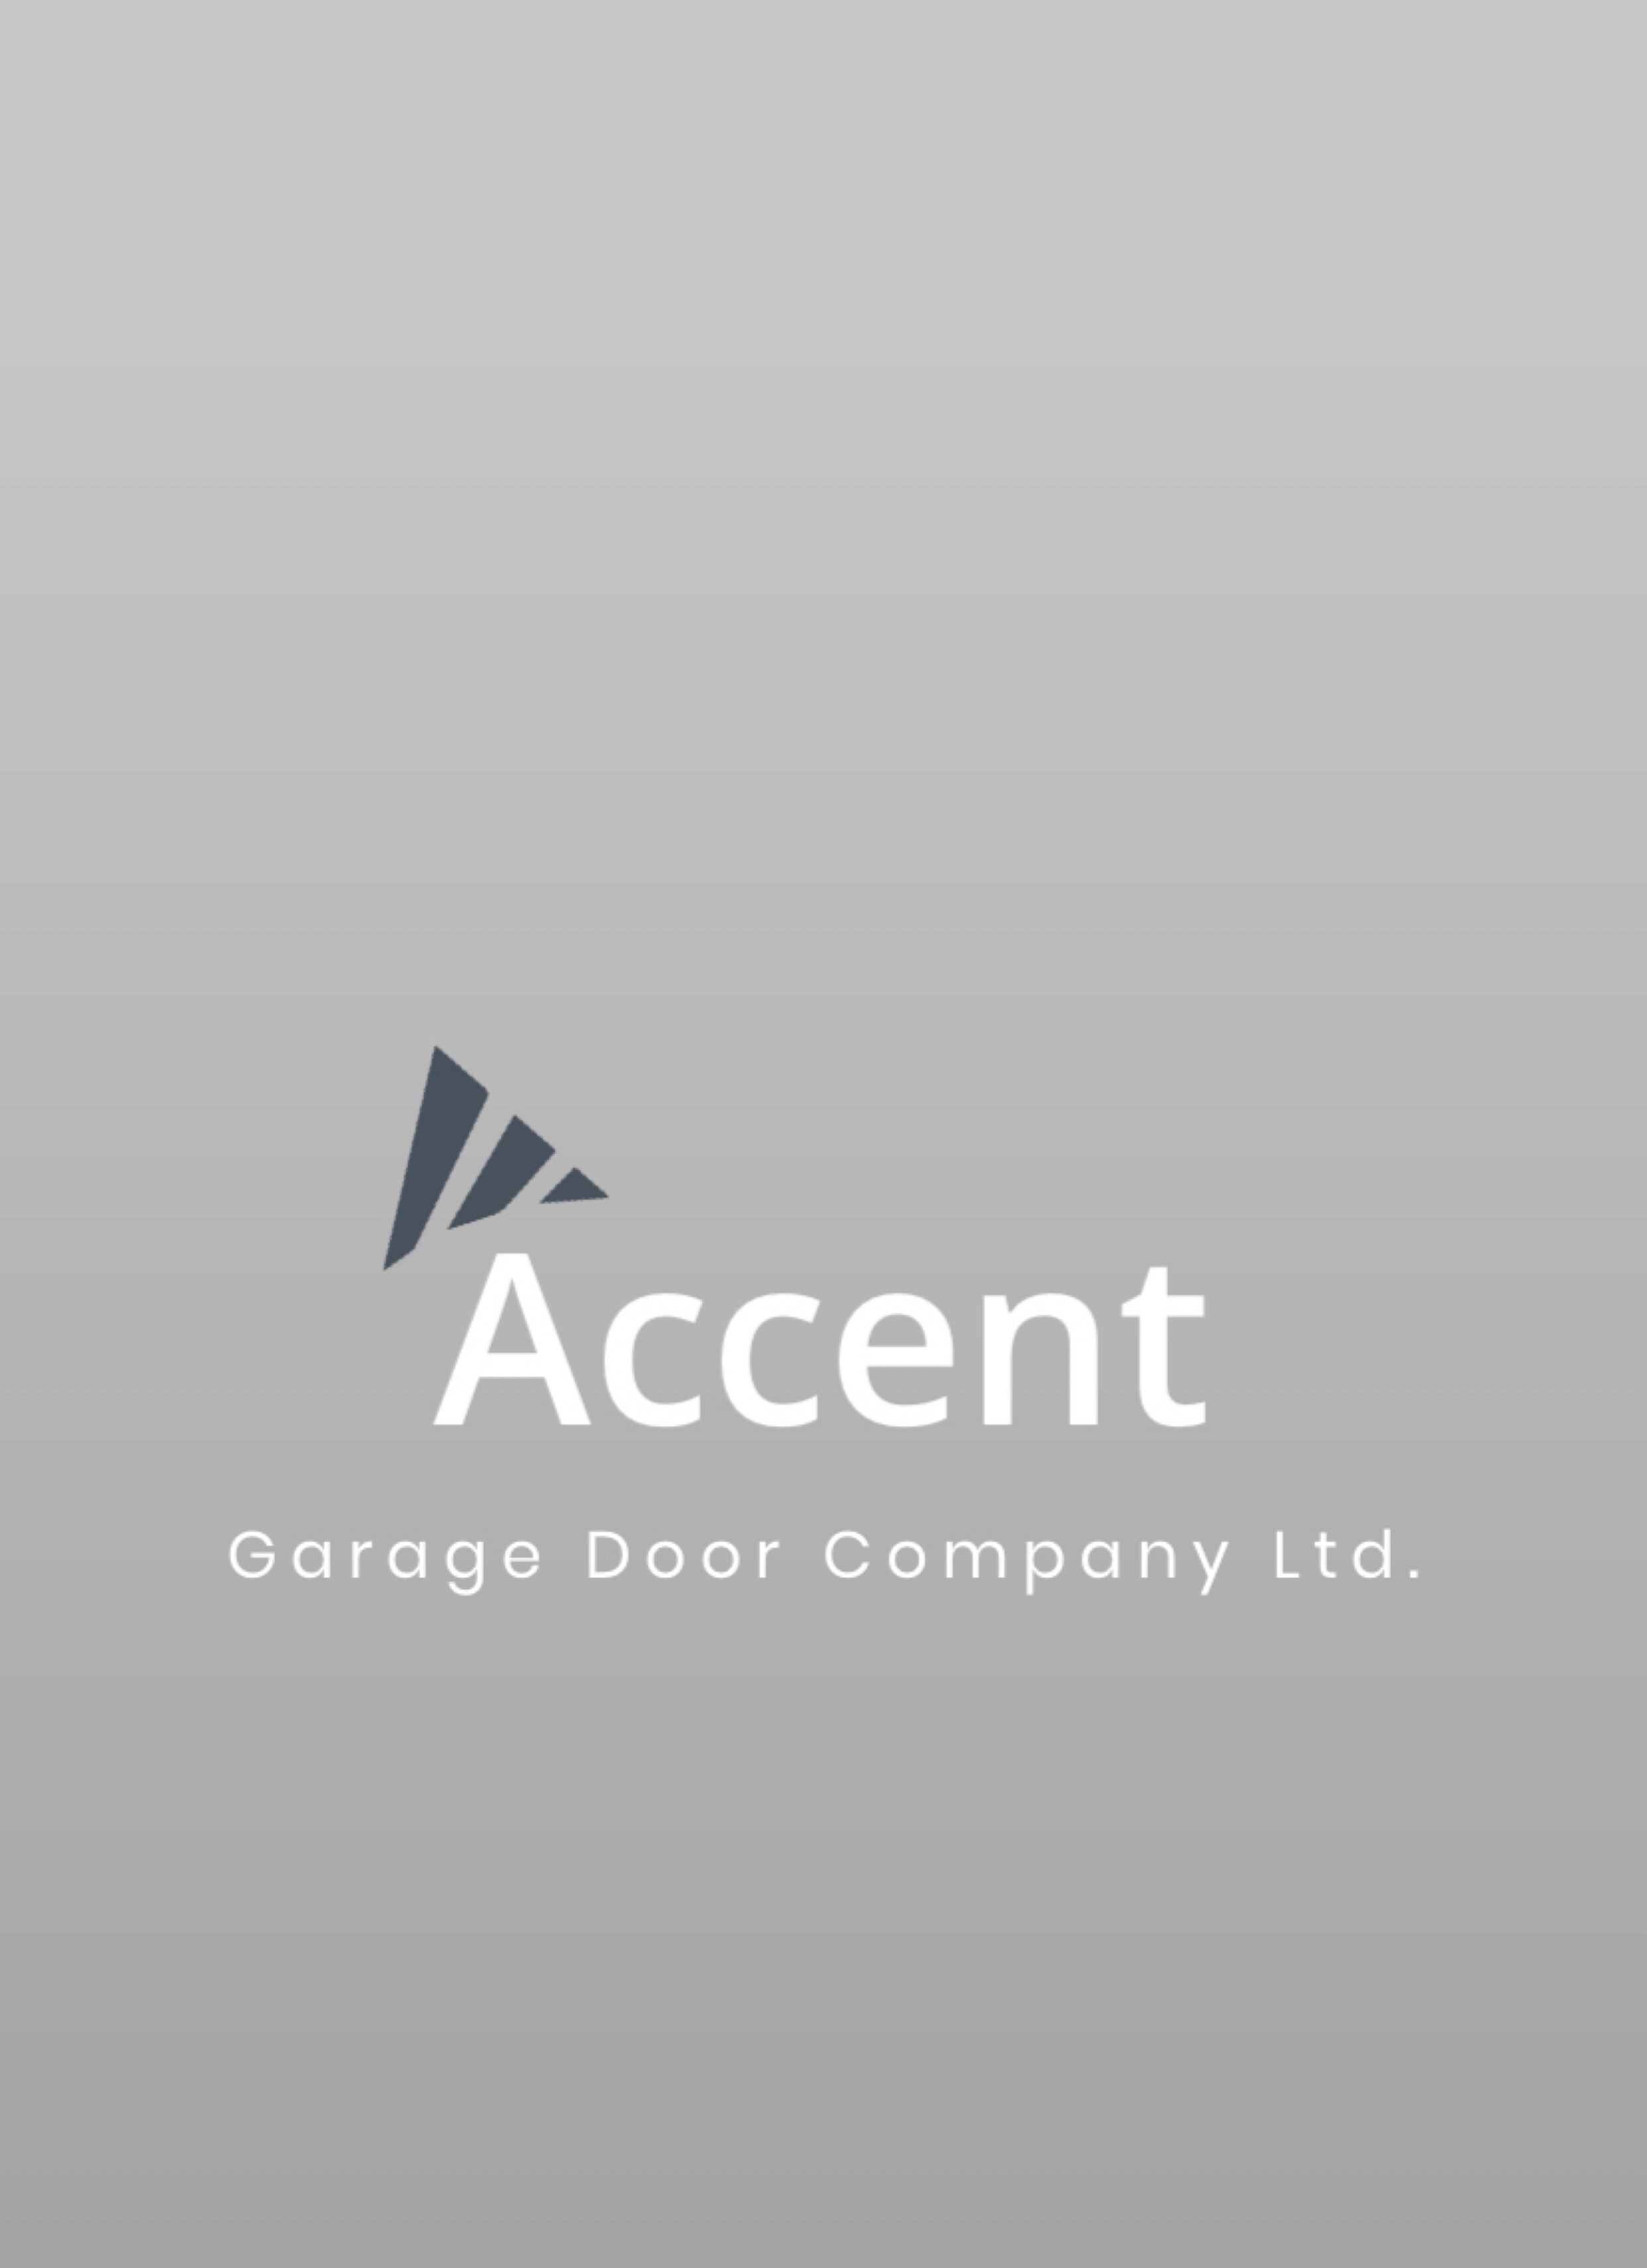 Accent Garage Doors logo